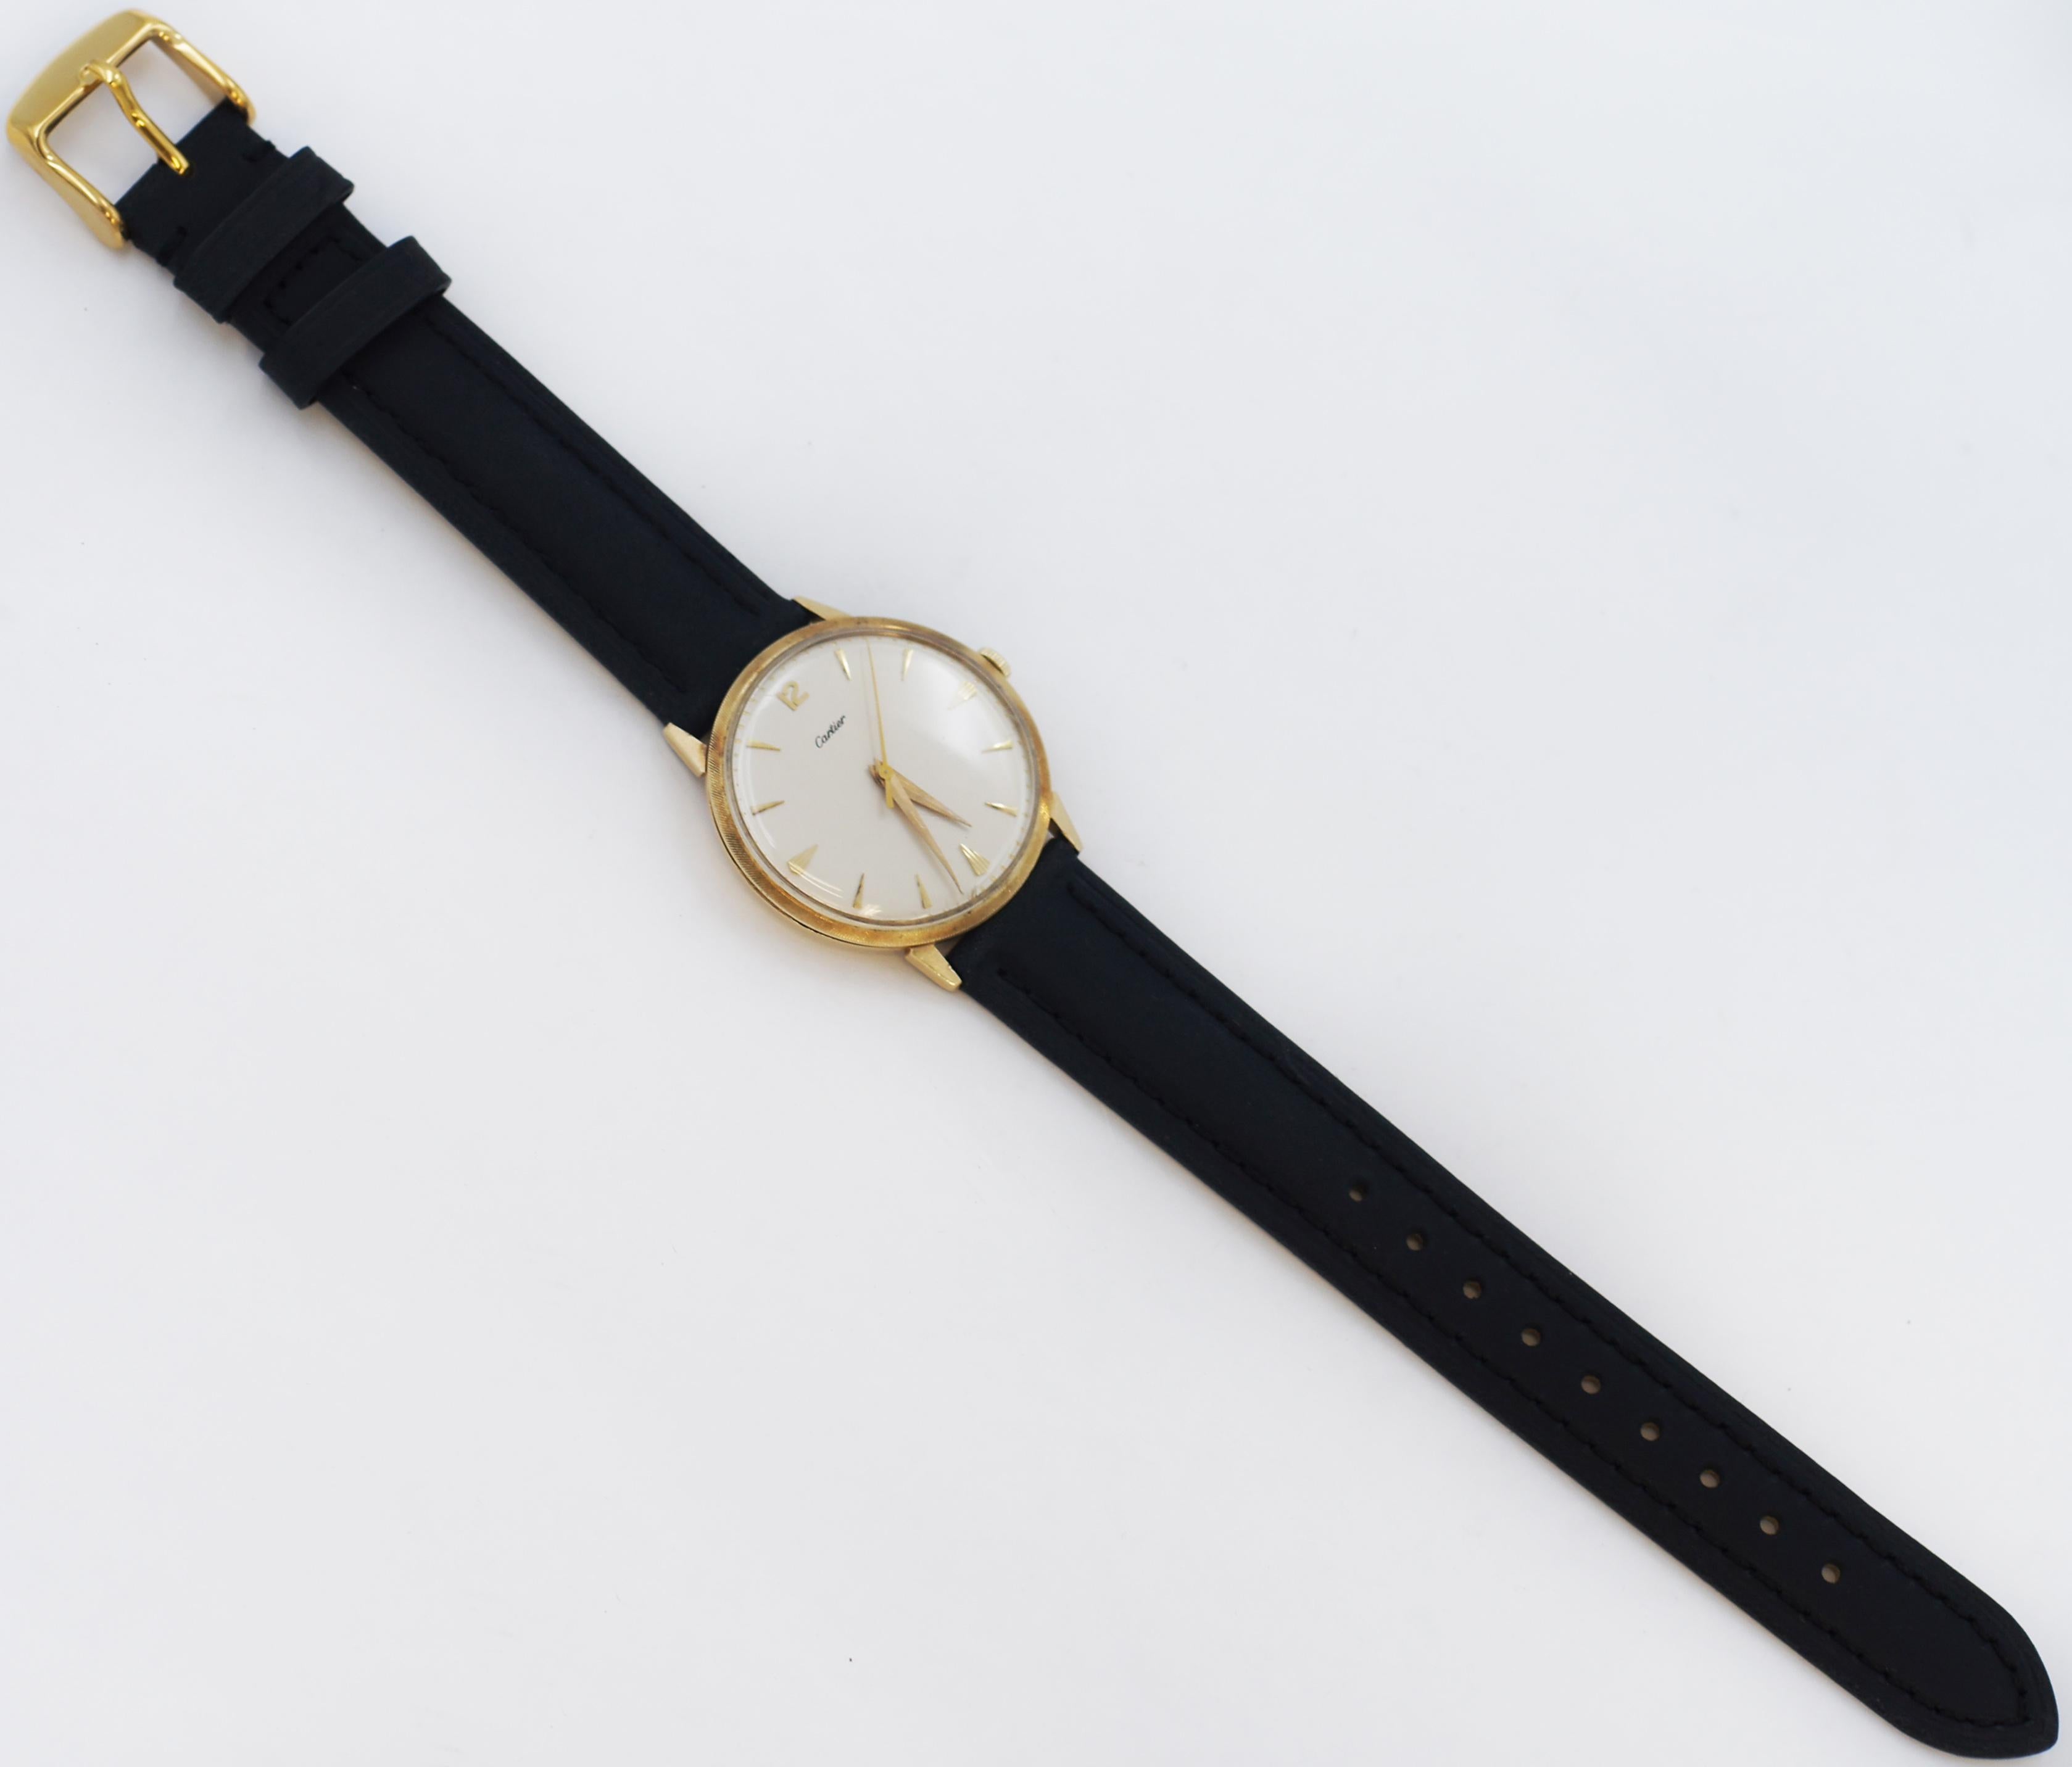 Voici une découverte extraordinaire - une montre-bracelet exceptionnellement rare de la marque Cartier, fabriquée par Movado, datant approximativement des années 1940. 
Ce garde-temps délicieusement fabriqué à la main est un témoignage de l'art de